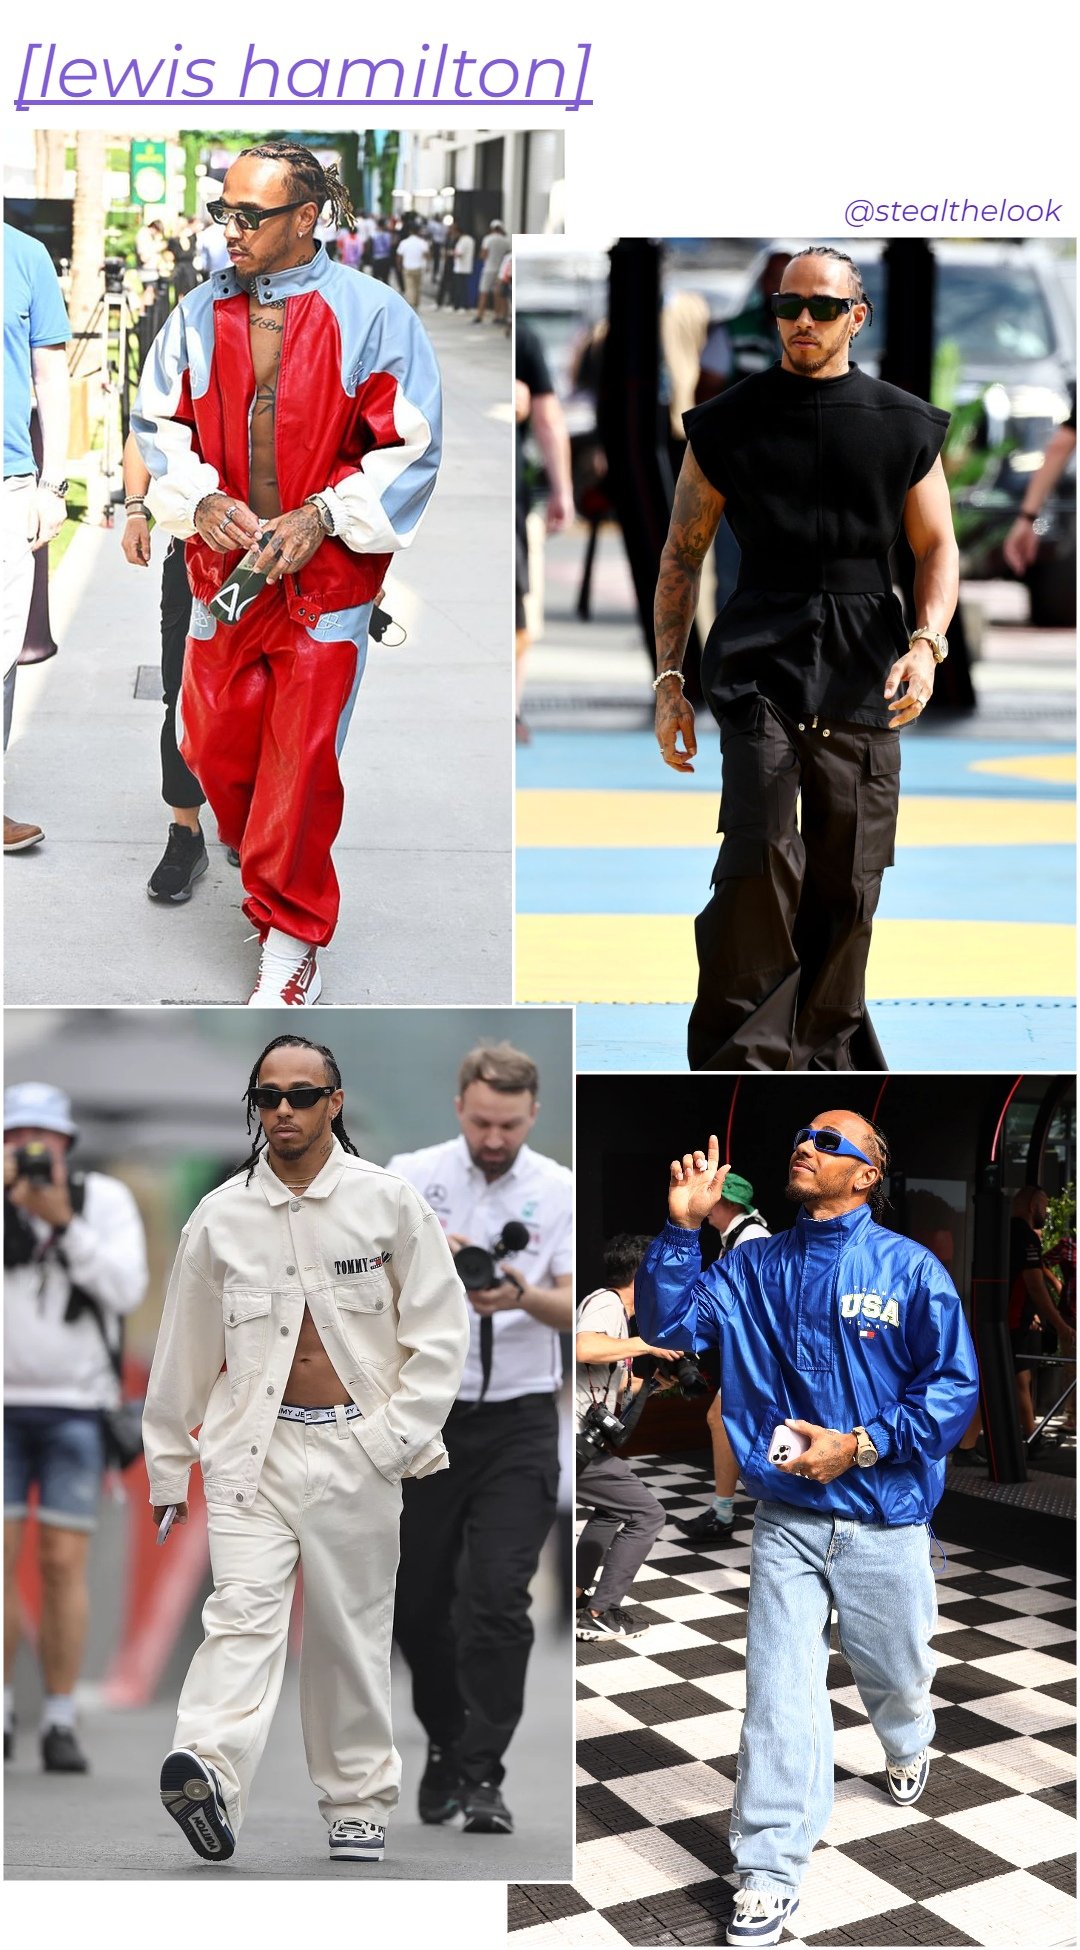 Lewis Hamilton - roupas diversas - Fórmula 1 - verão - colagem de imagens - https://stealthelook.com.br